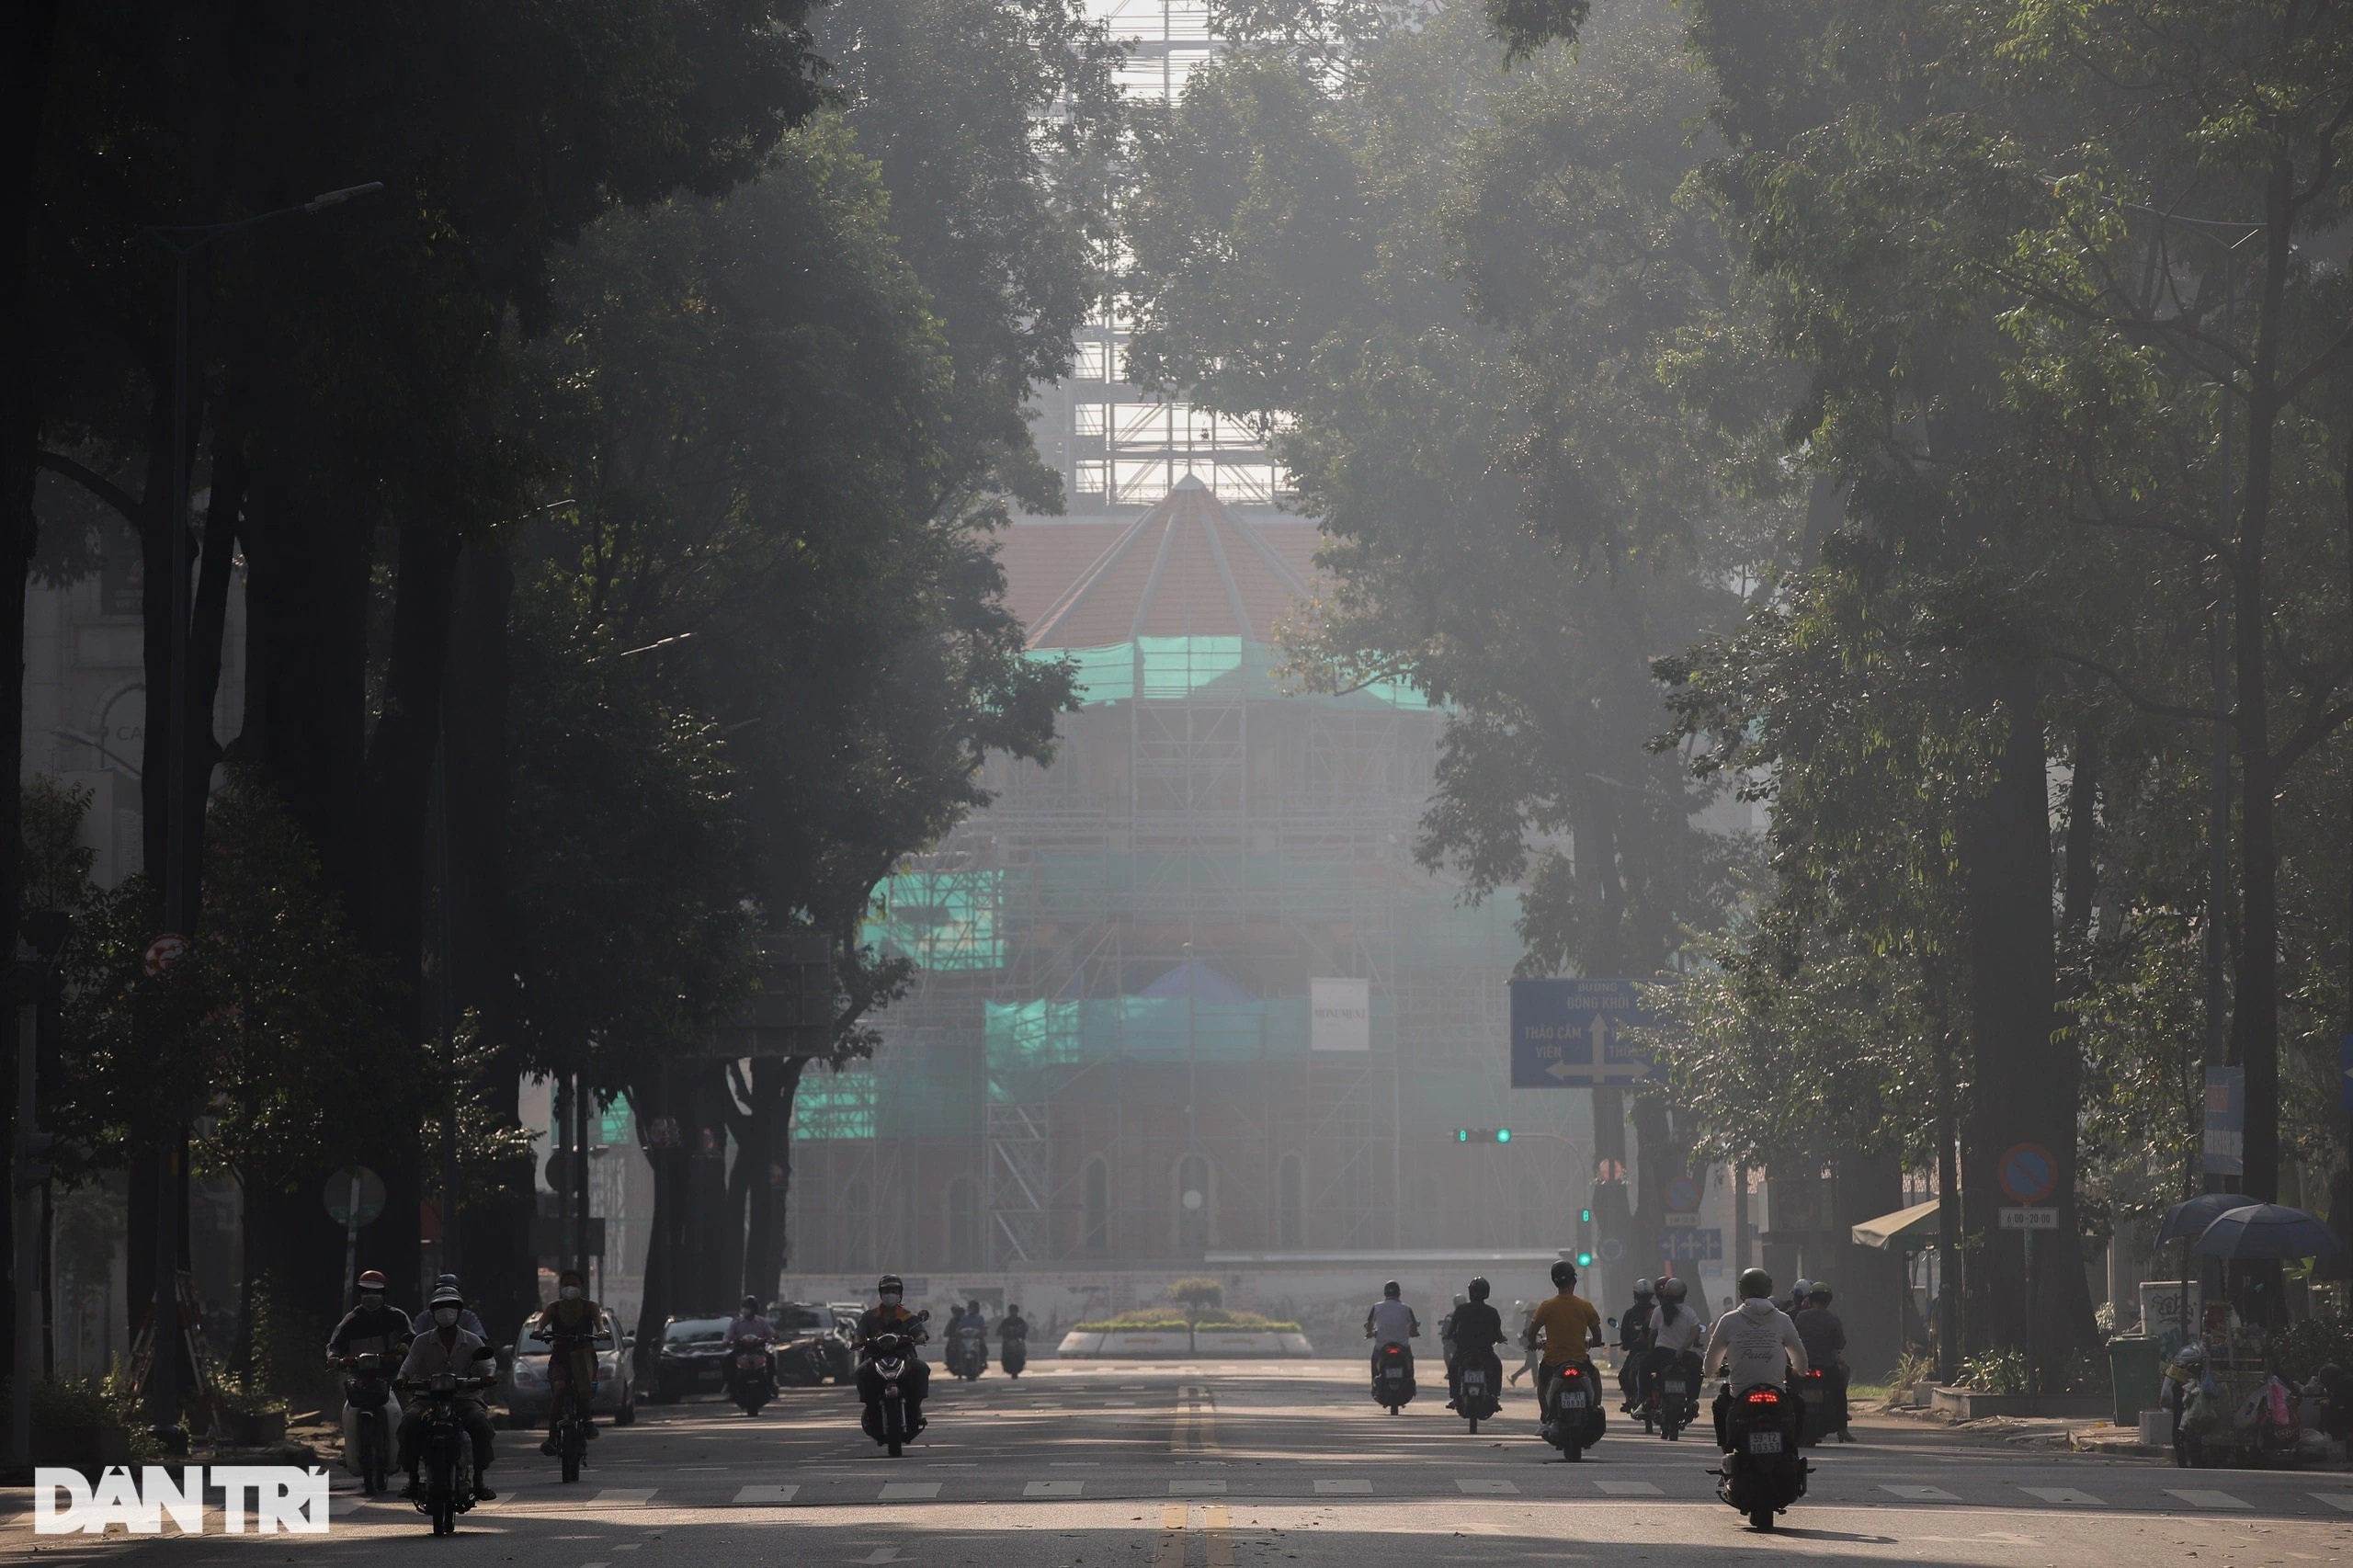 Sài Gòn se lạnh, thành phố phủ kín trong sương mù - 4